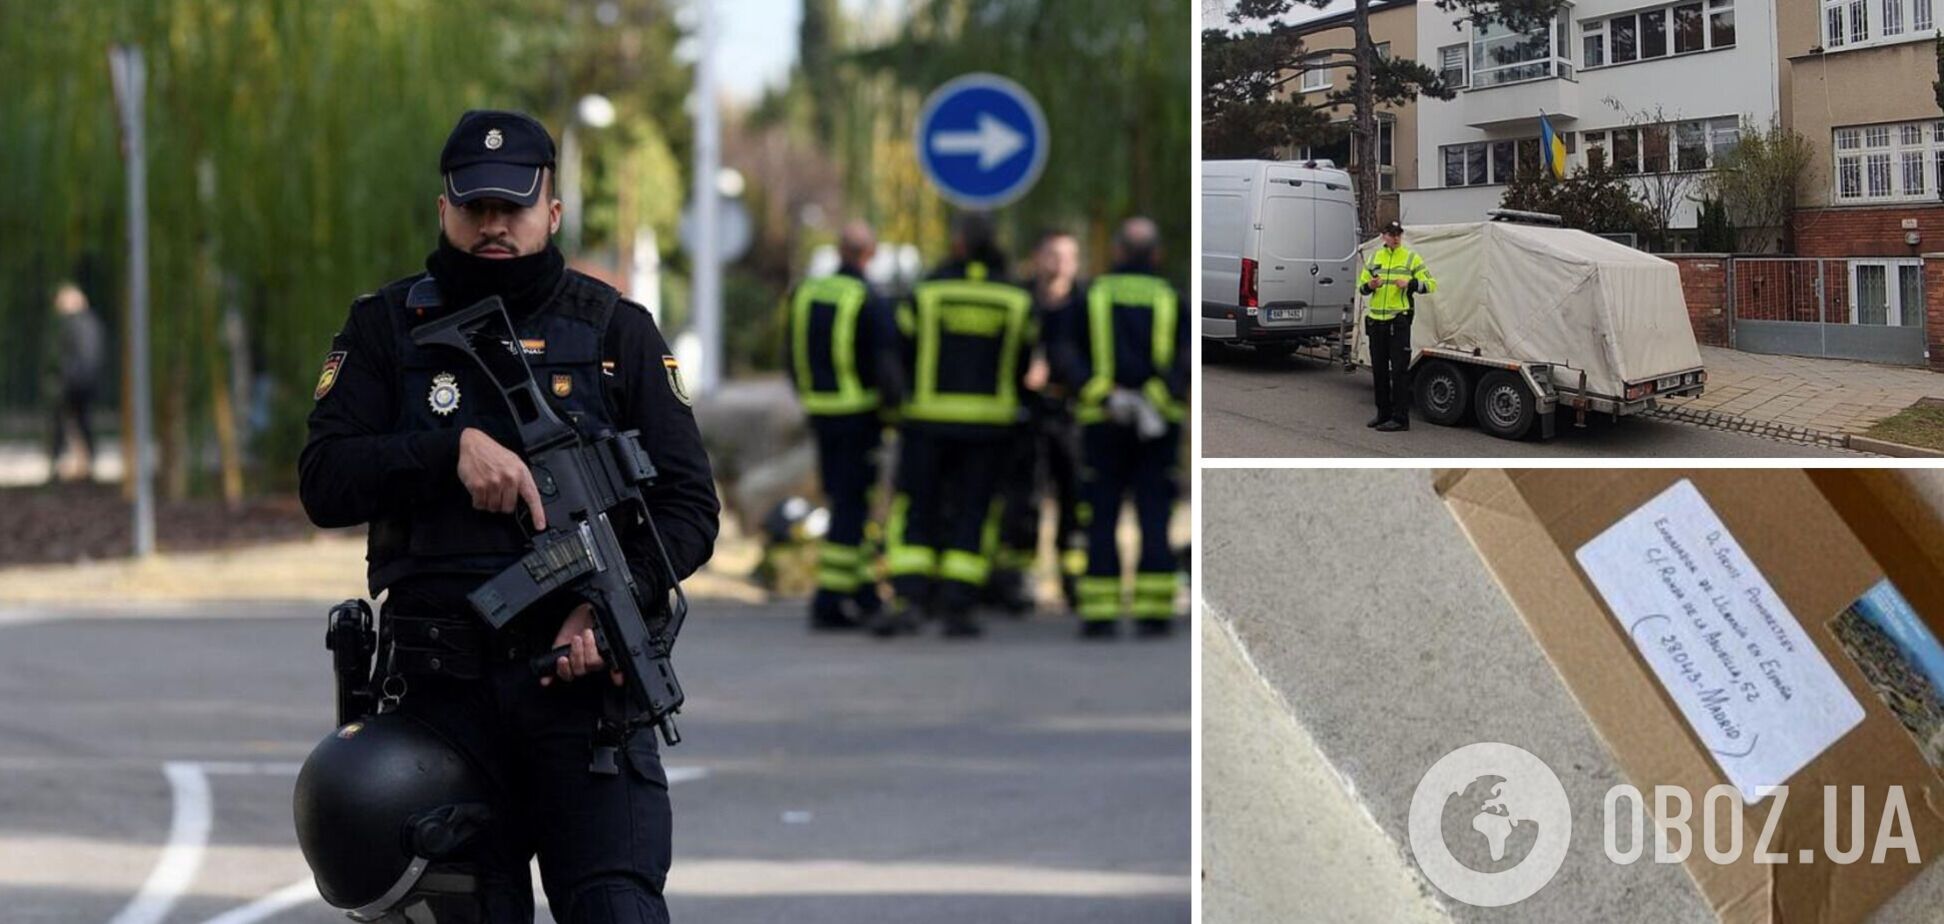 Поліція Іспанії дізналася, звідки в посольство України надіслали листа з вибухівкою